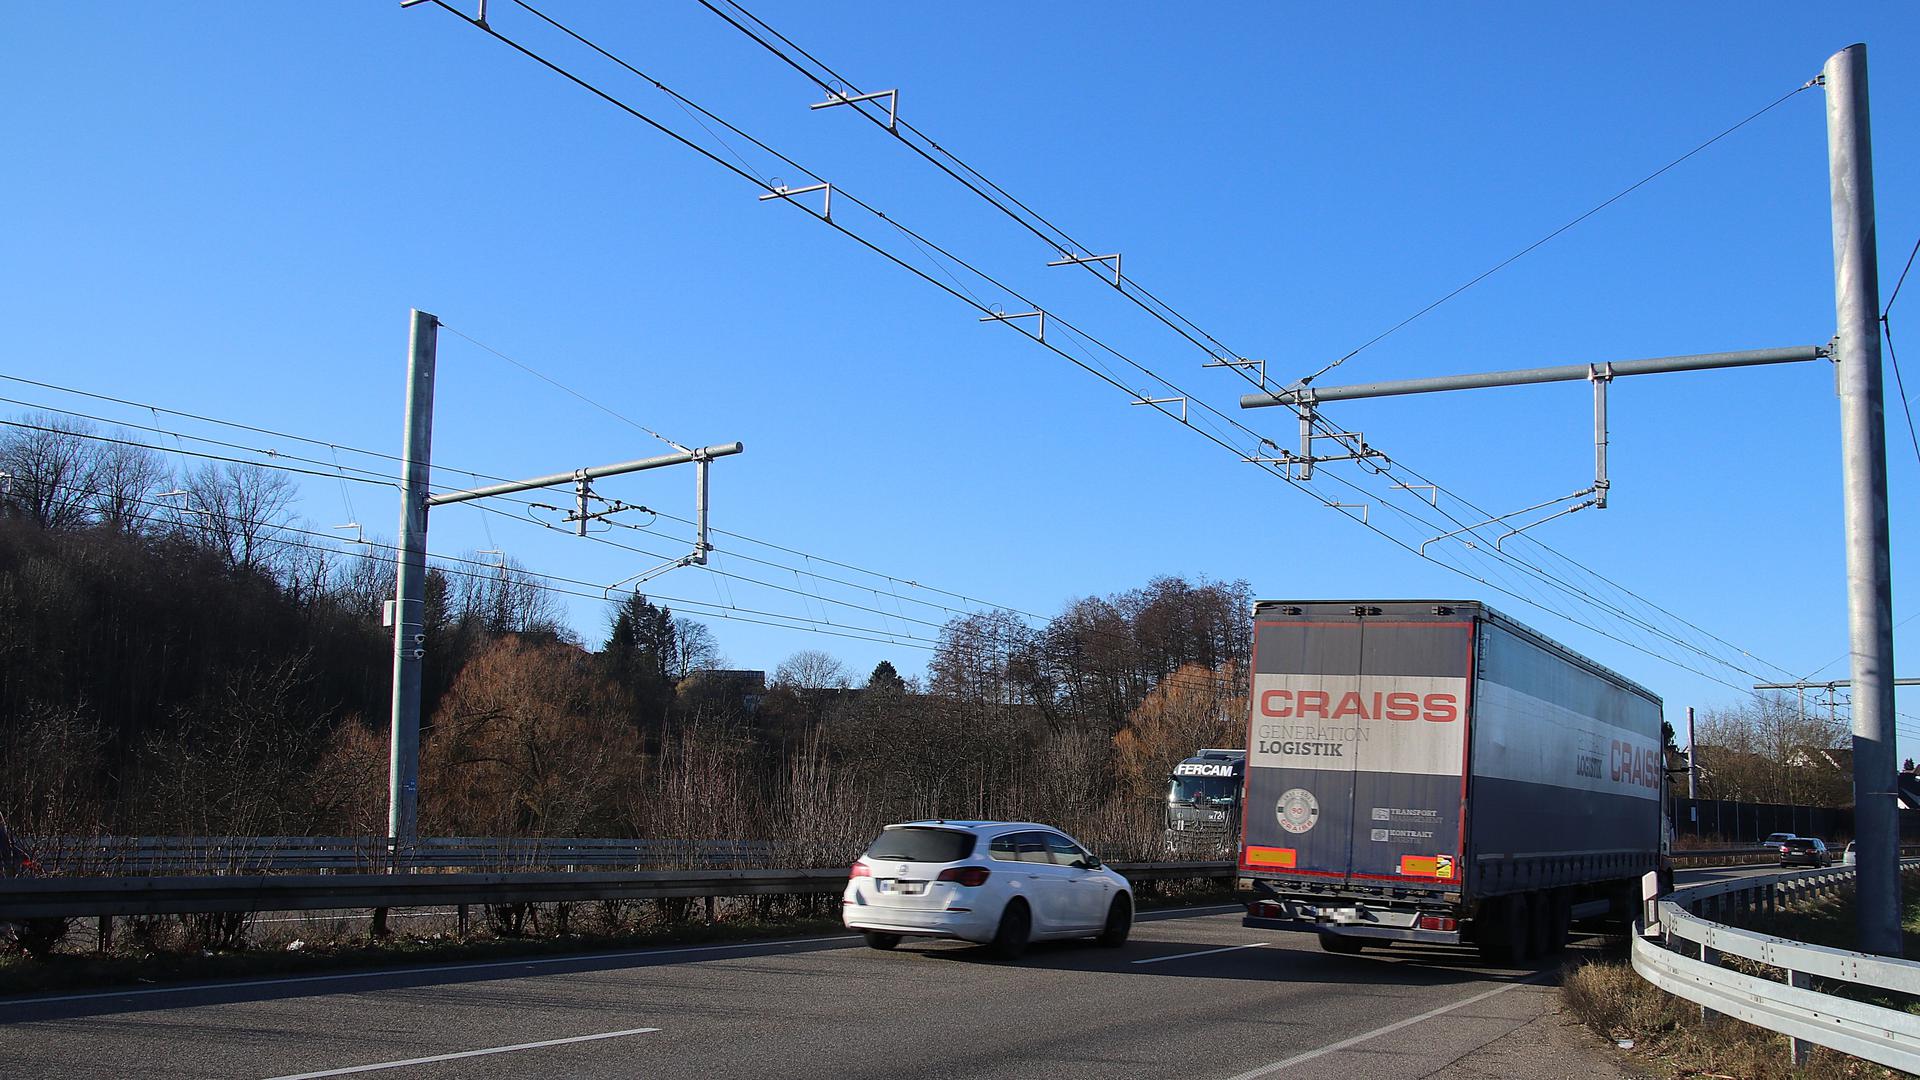 Autobahn mit Oberleitungen für Laster